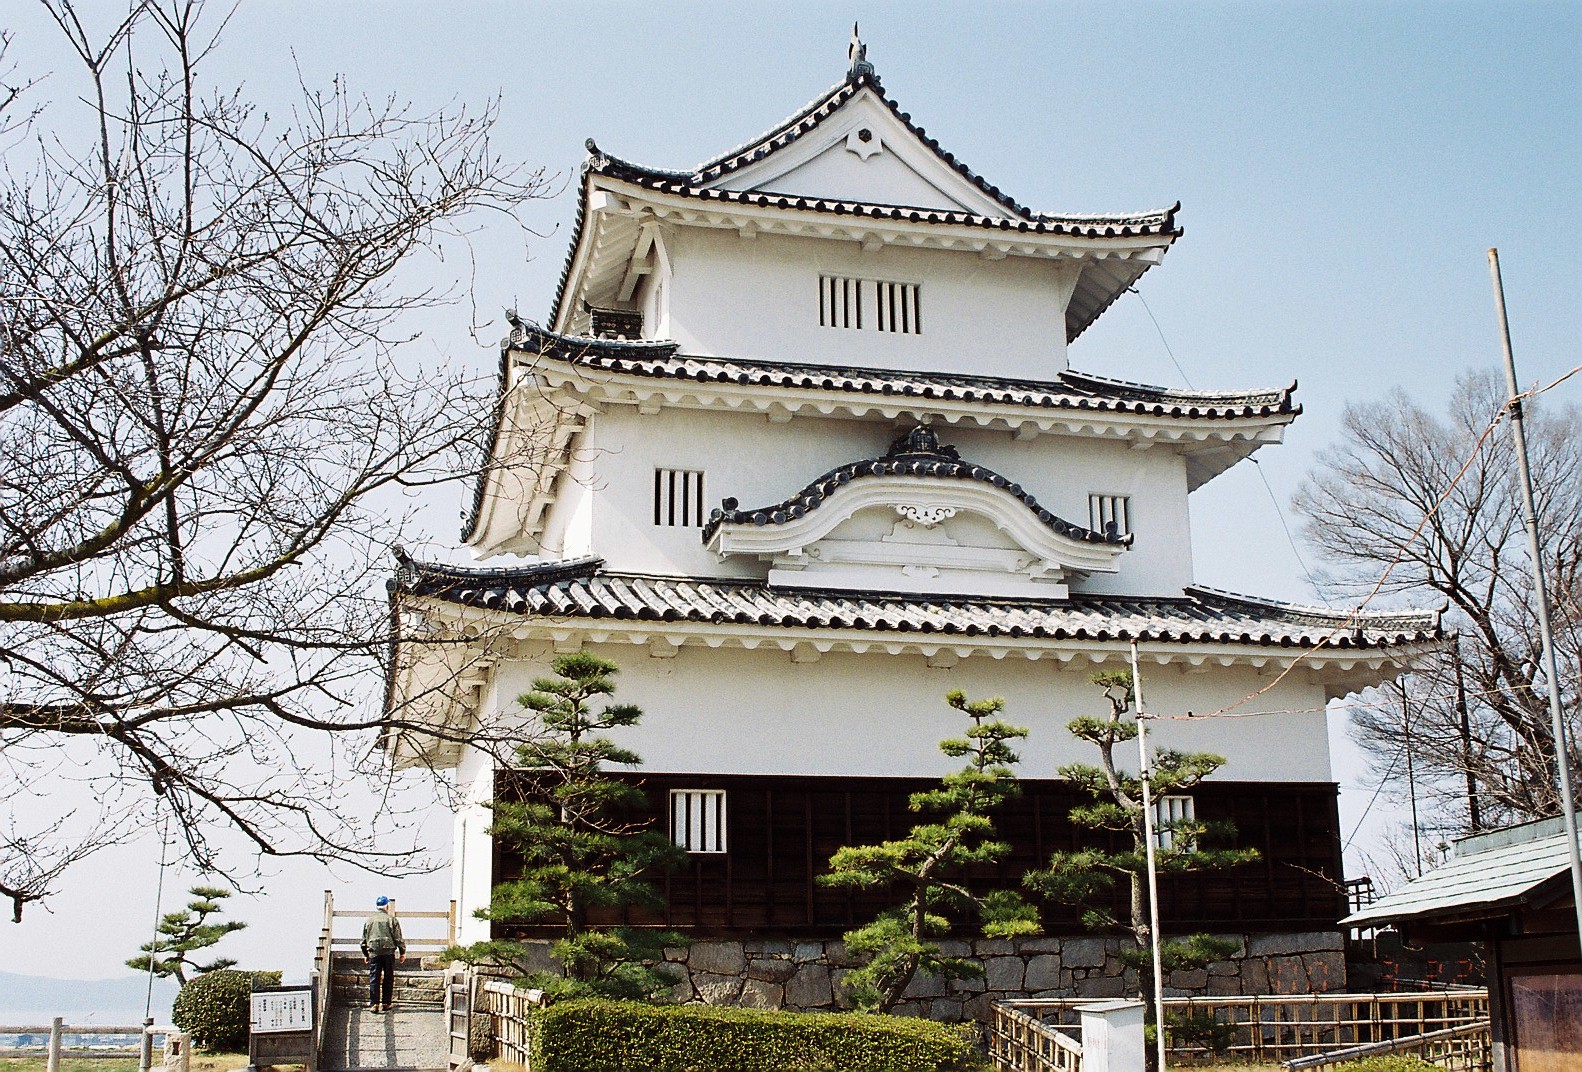 丸亀城（重要文化財）香川県丸亀市一番丁、1660年築の三重三階の独立式で層塔型天守（創建時は連立型だった）